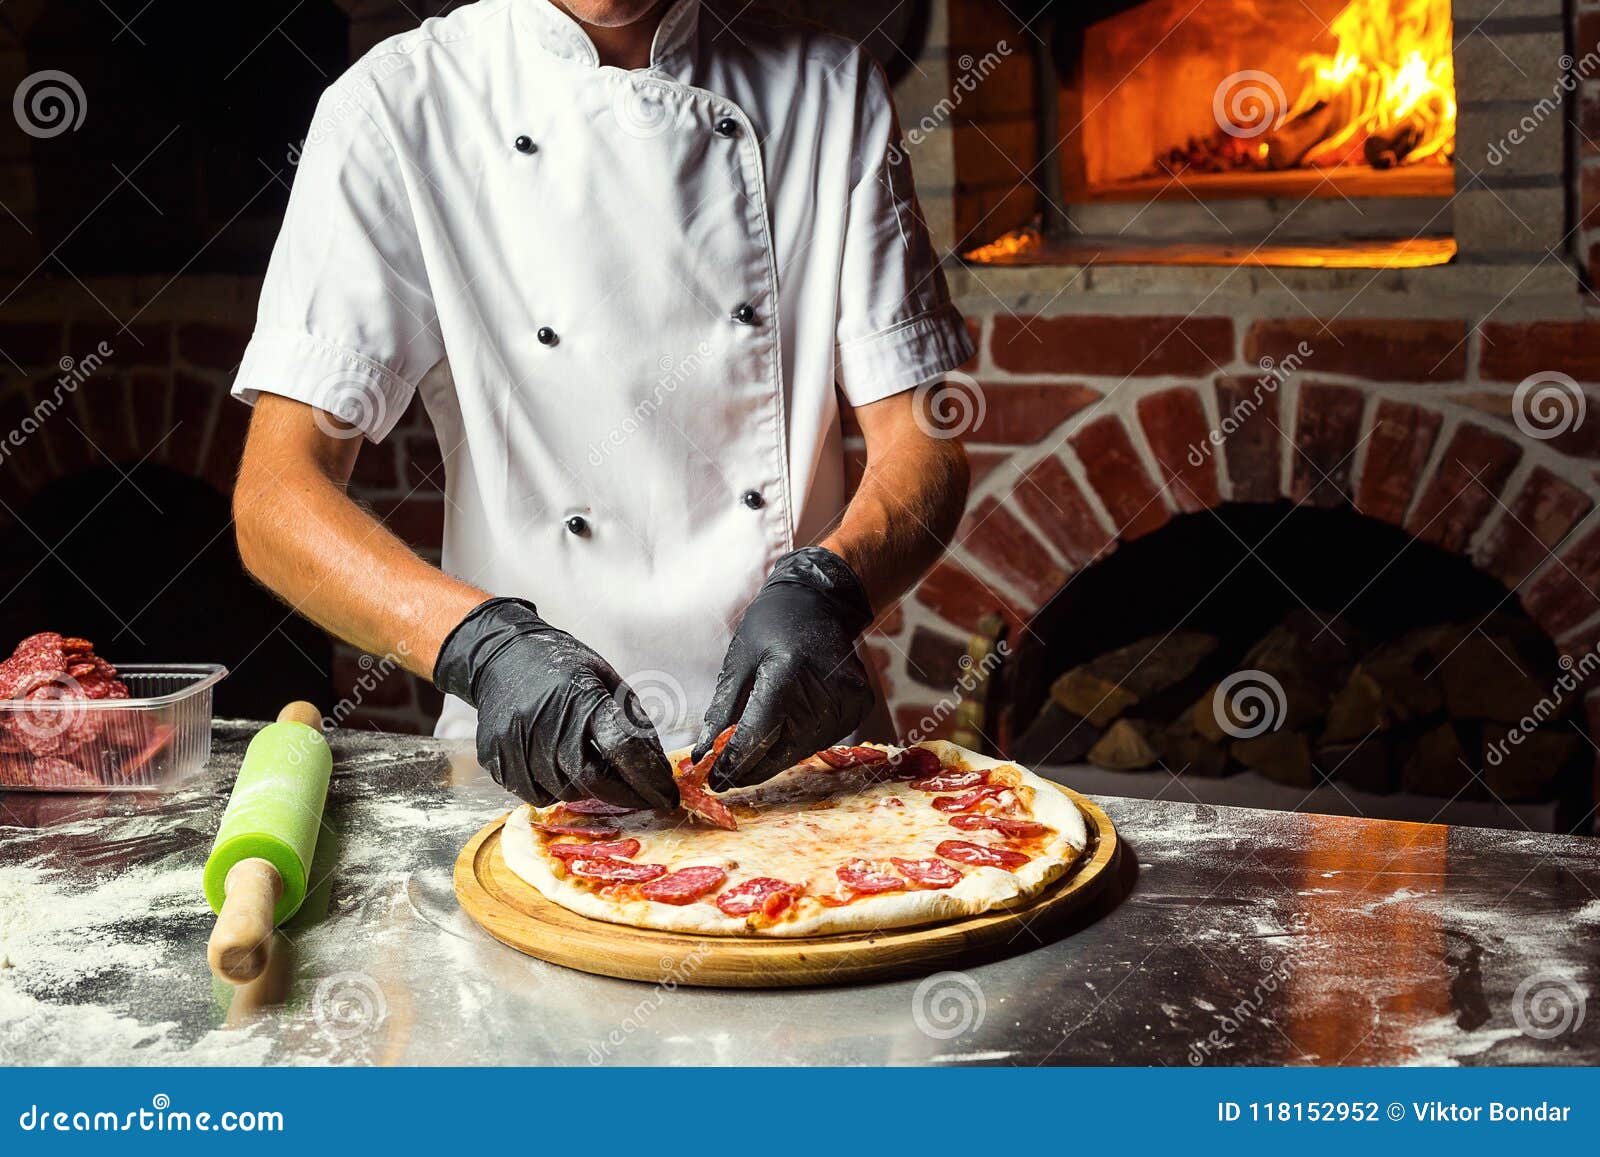 Человек делающий пиццу. Как делают пиццы в ресторанах. Повар делает пиццу. Chef making pizza. Повар делает пиццу картгк.